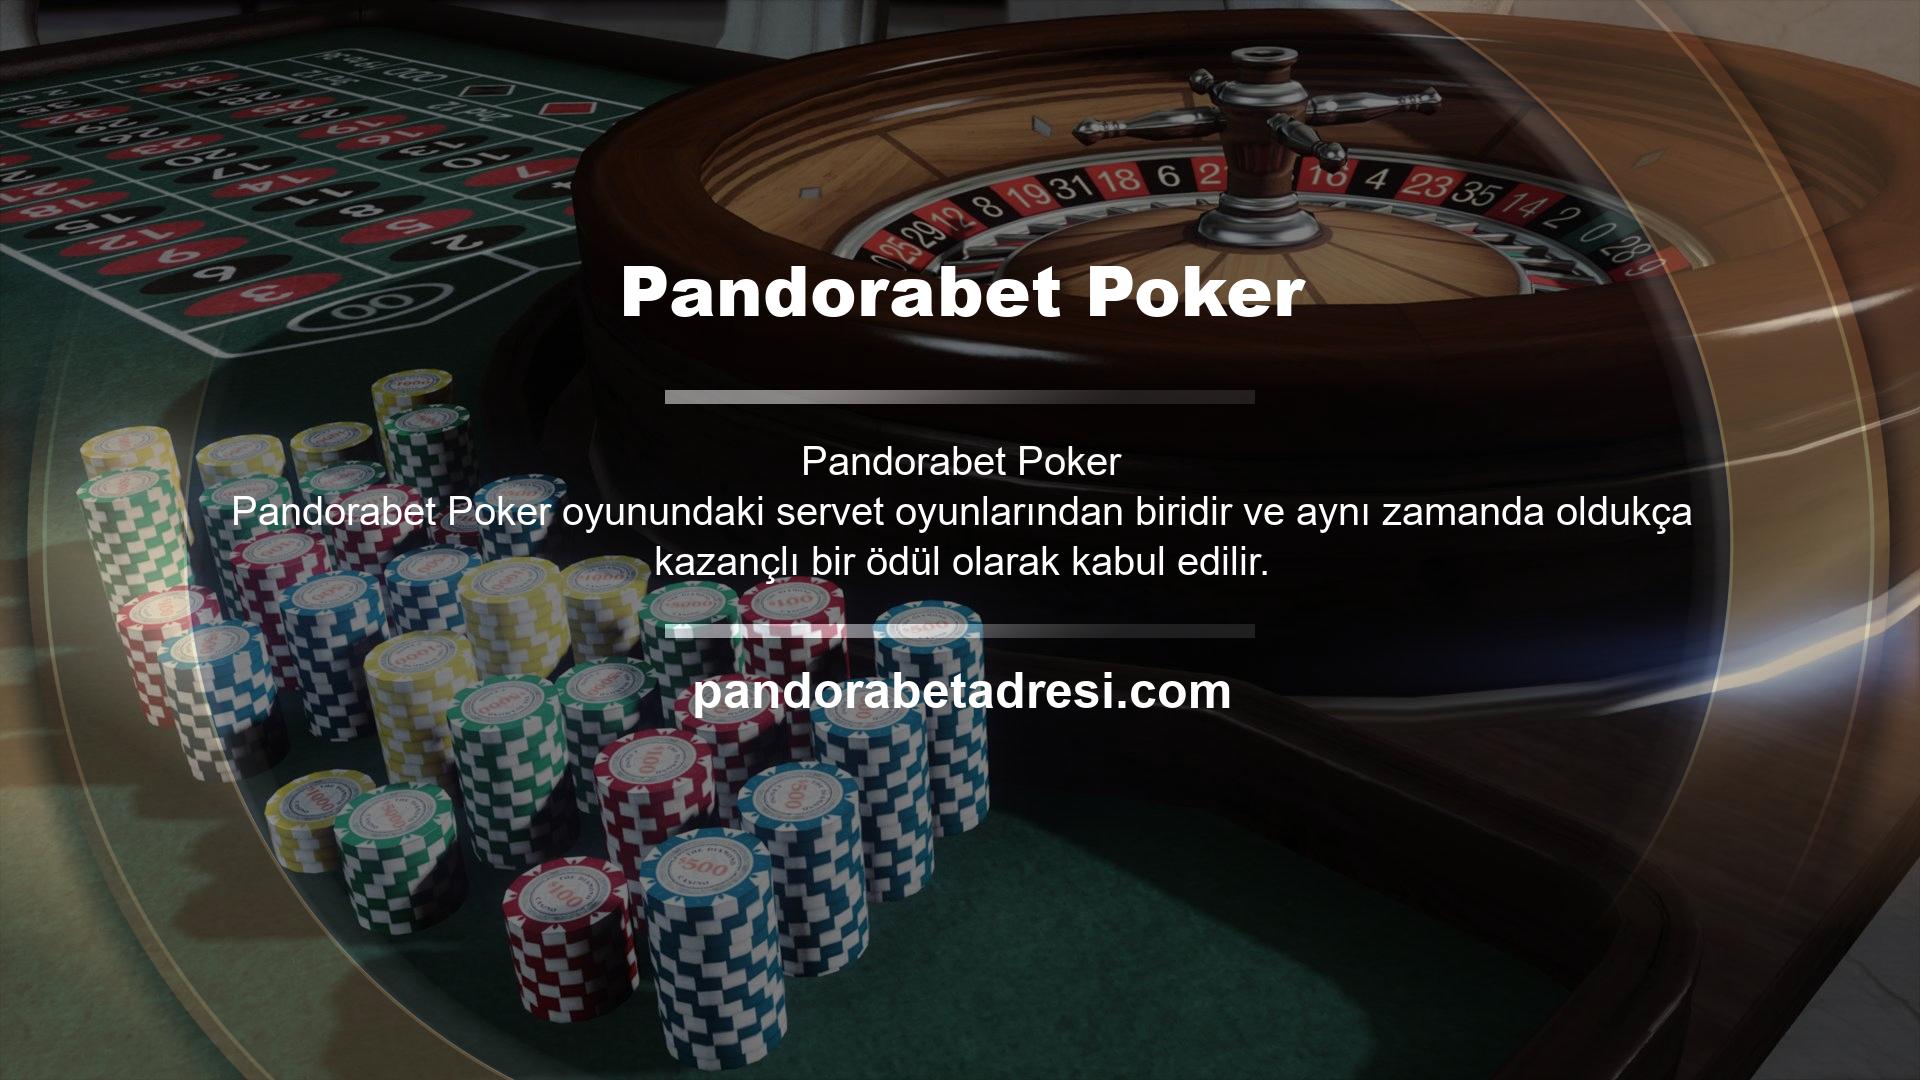 Bu bağlamda, bahisçiler makul miktarda para kazanmaya çalışırken Pandorabet Games bahis sitesi aracılığıyla poker oyunlarına erişirler